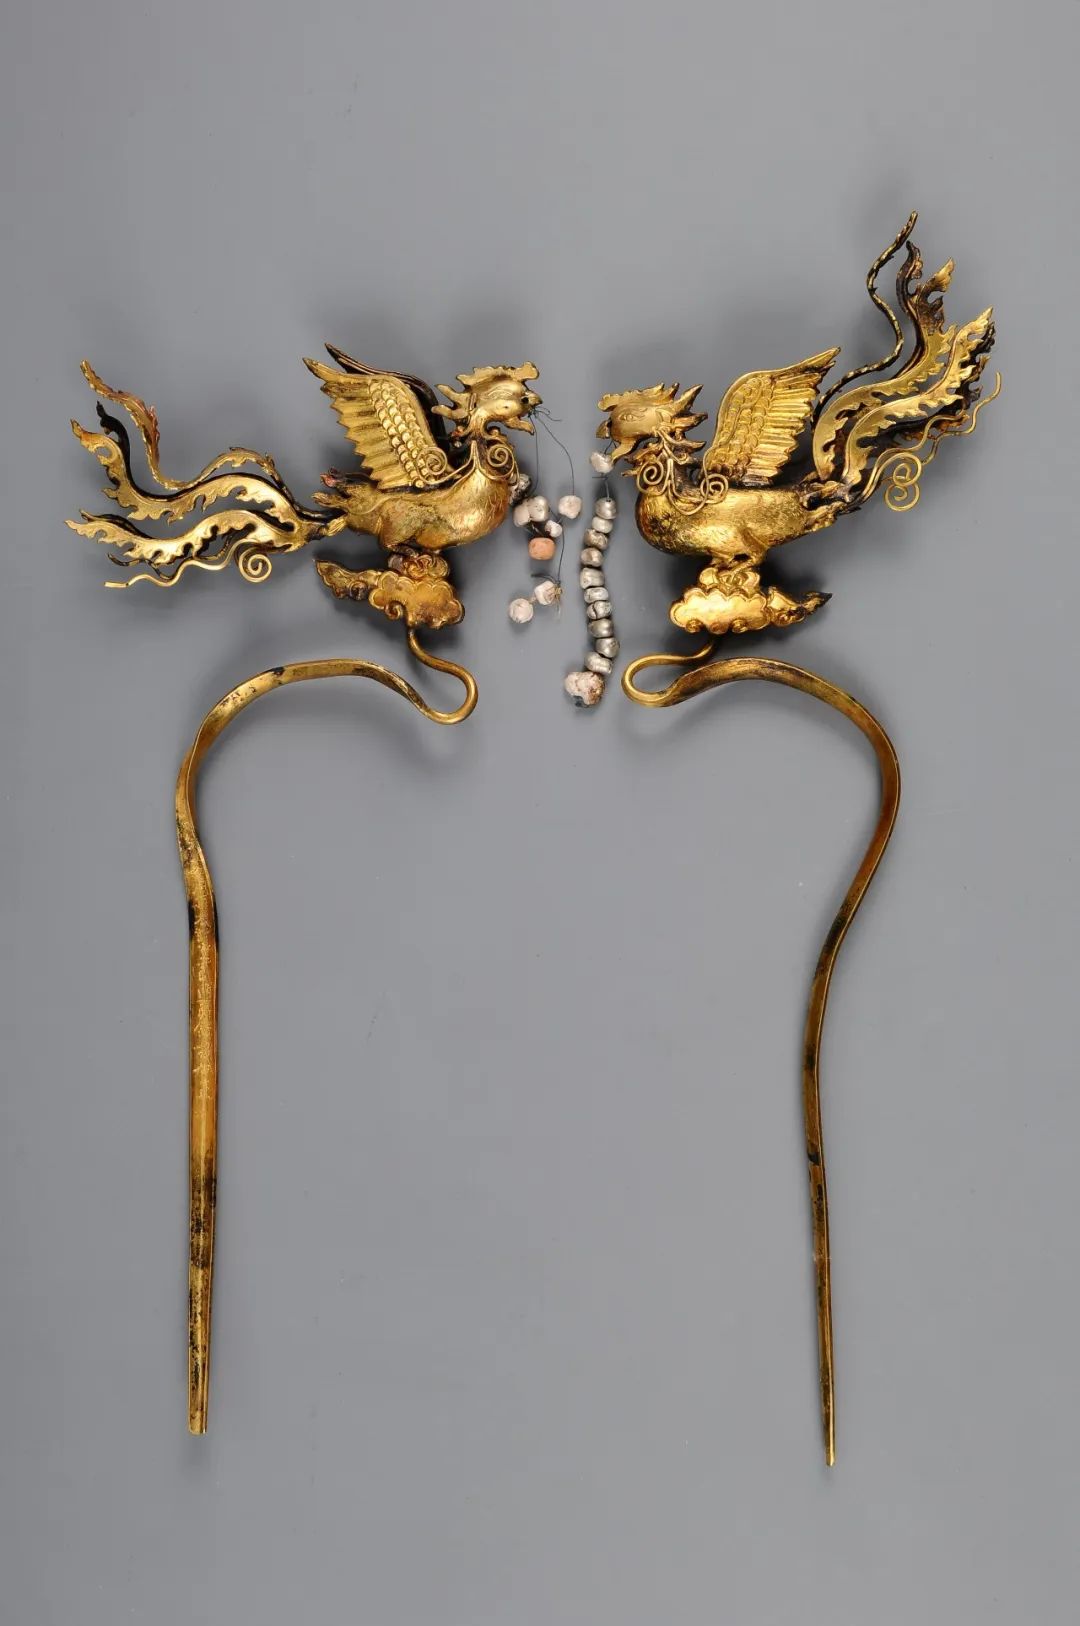 益庄王妃鎏金银凤簪d题目3我馆馆标是运用了下列哪件文物元素设计的呢